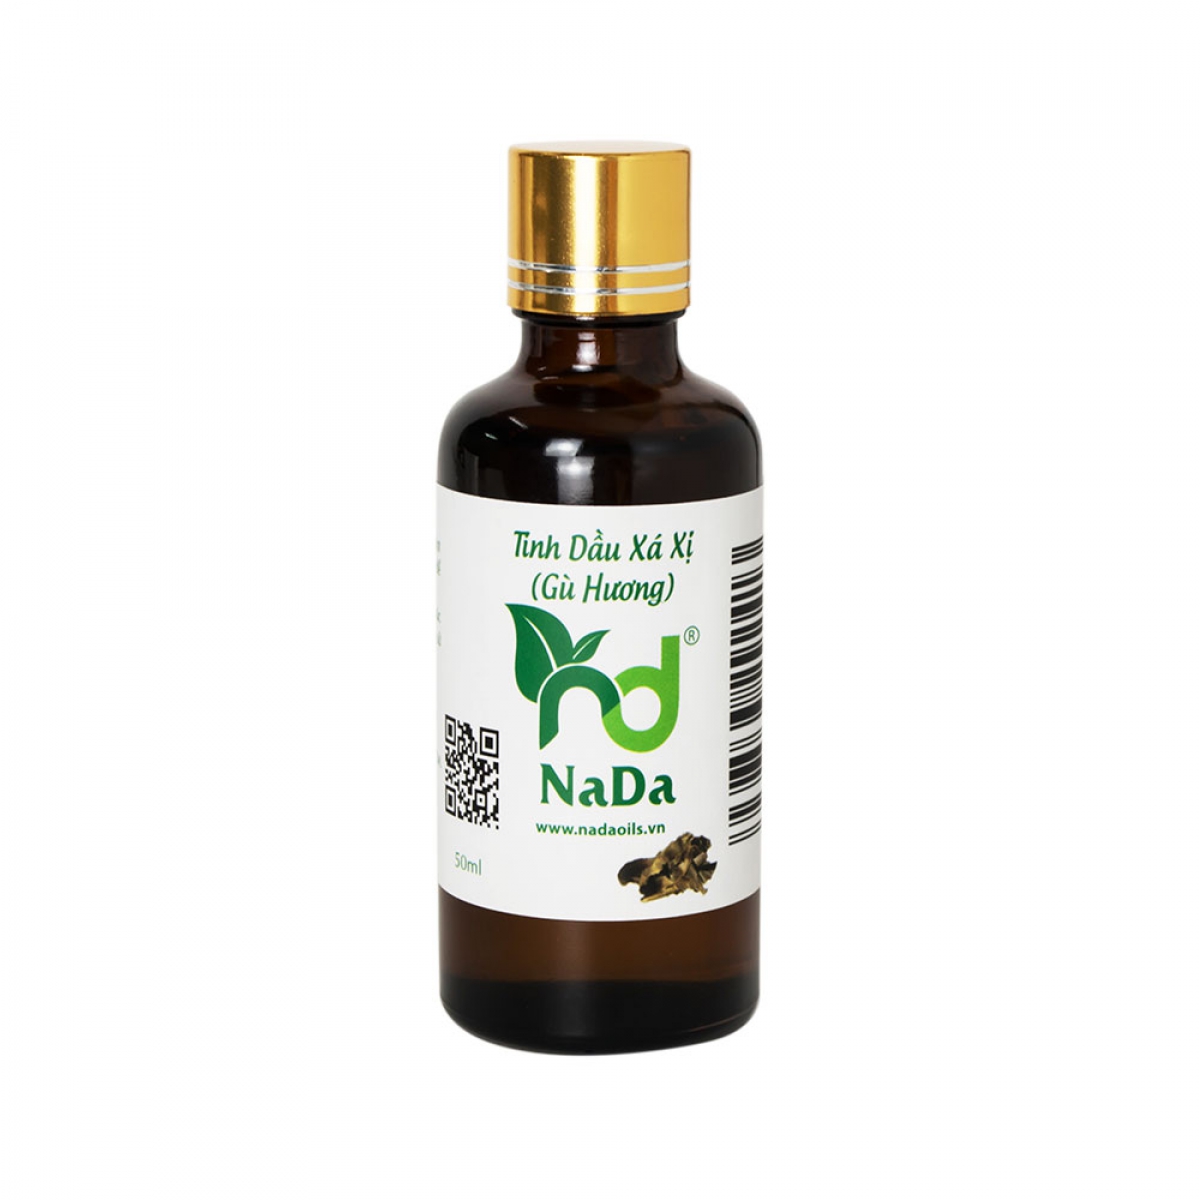 Tinh dầu Xá xị – NaDaOils